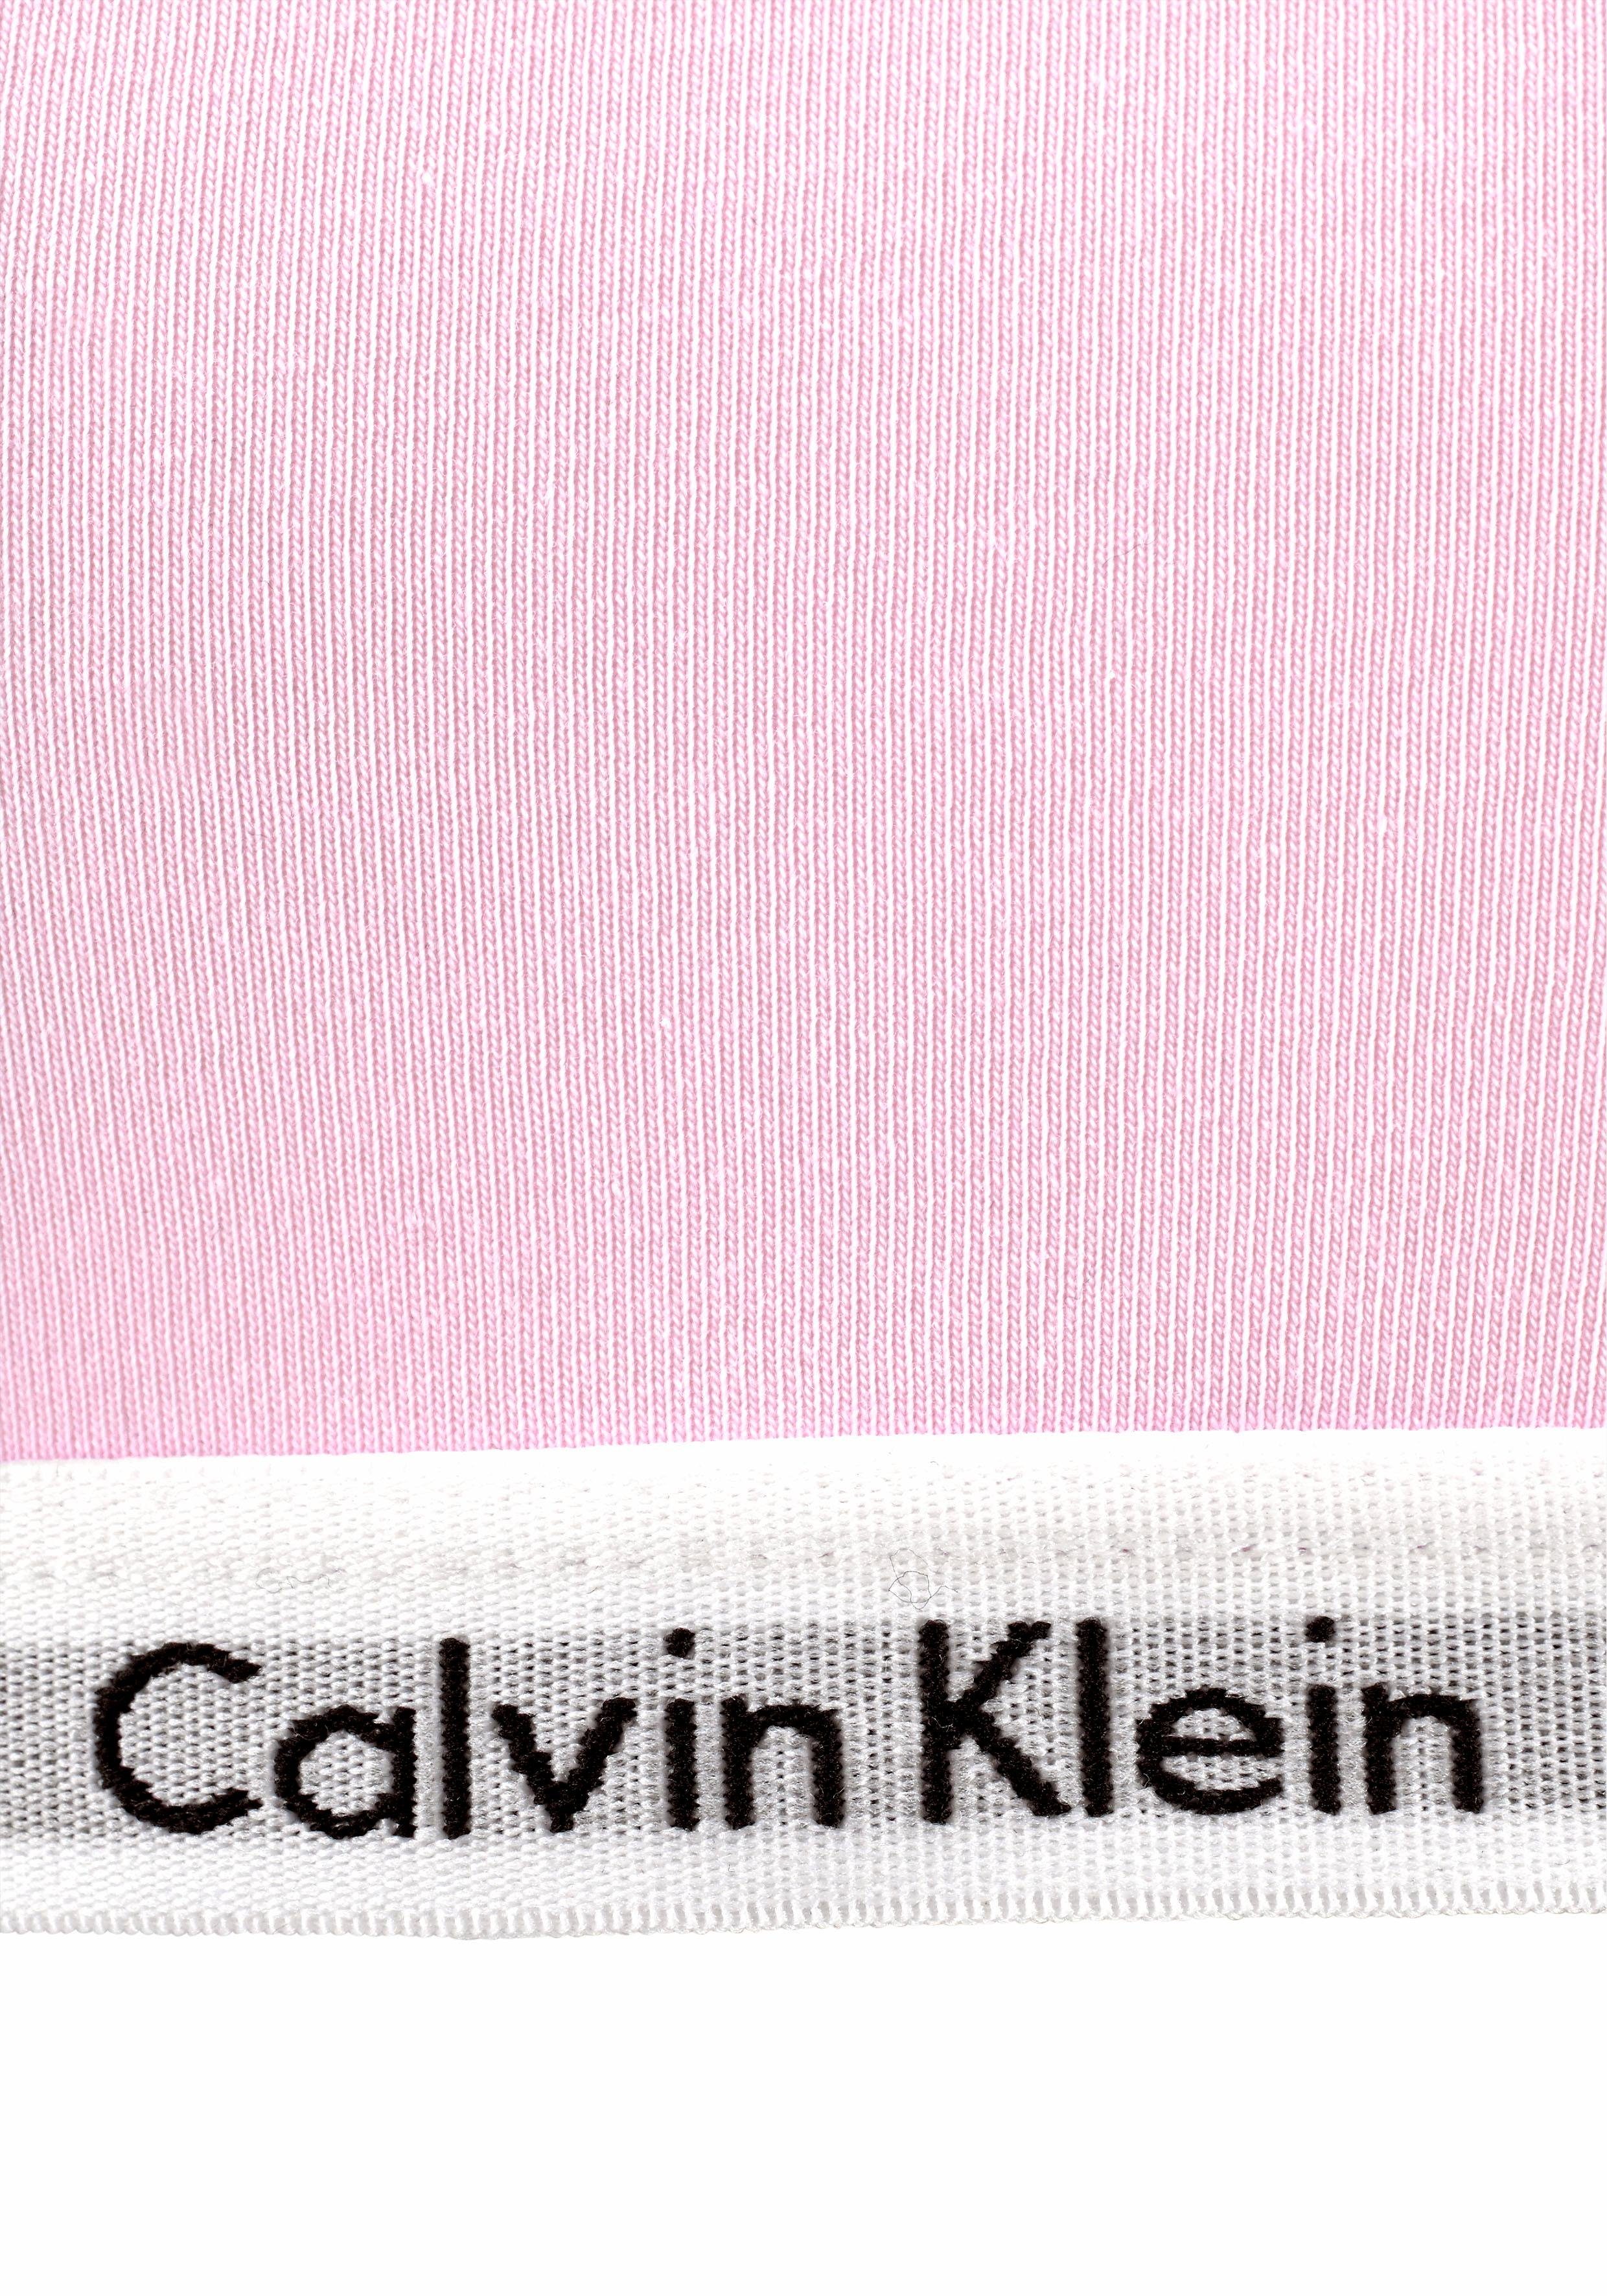 Calvin Klein Stück) (2 Underwear Mädchen mit Bustier Logobund 